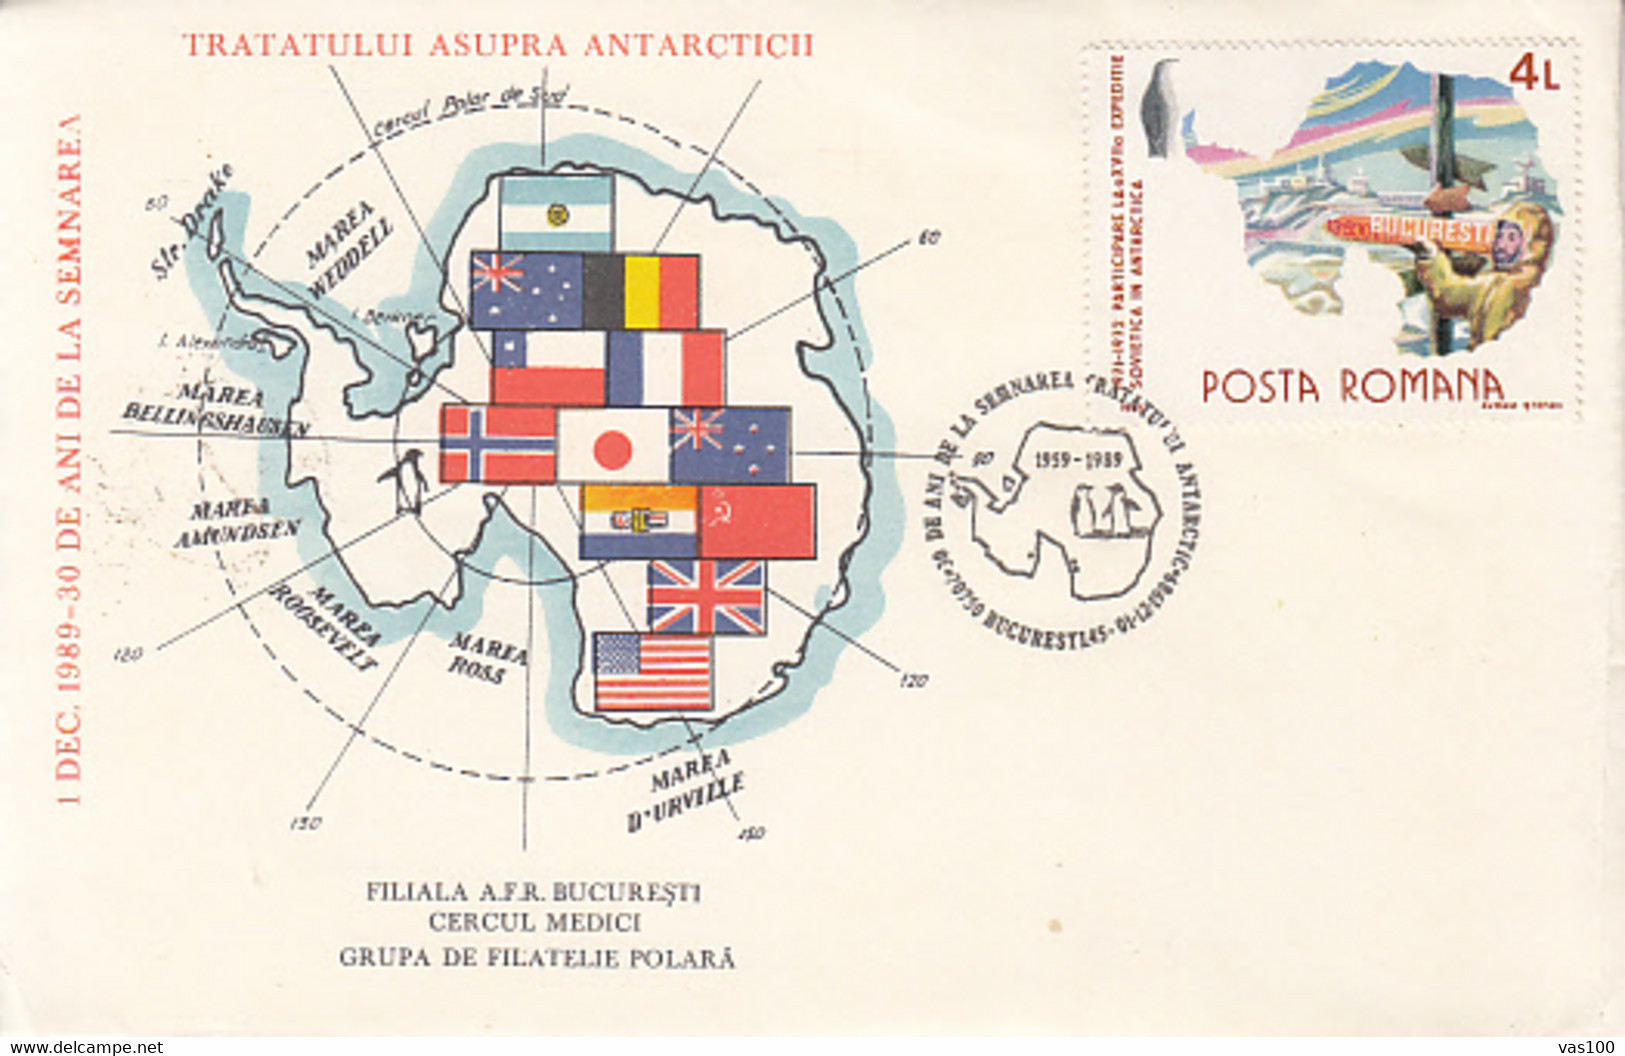 SOUTH POLE, ANTARCTIC TREATY, SPECIAL COVER, 1989, ROMANIA - Antarctic Treaty